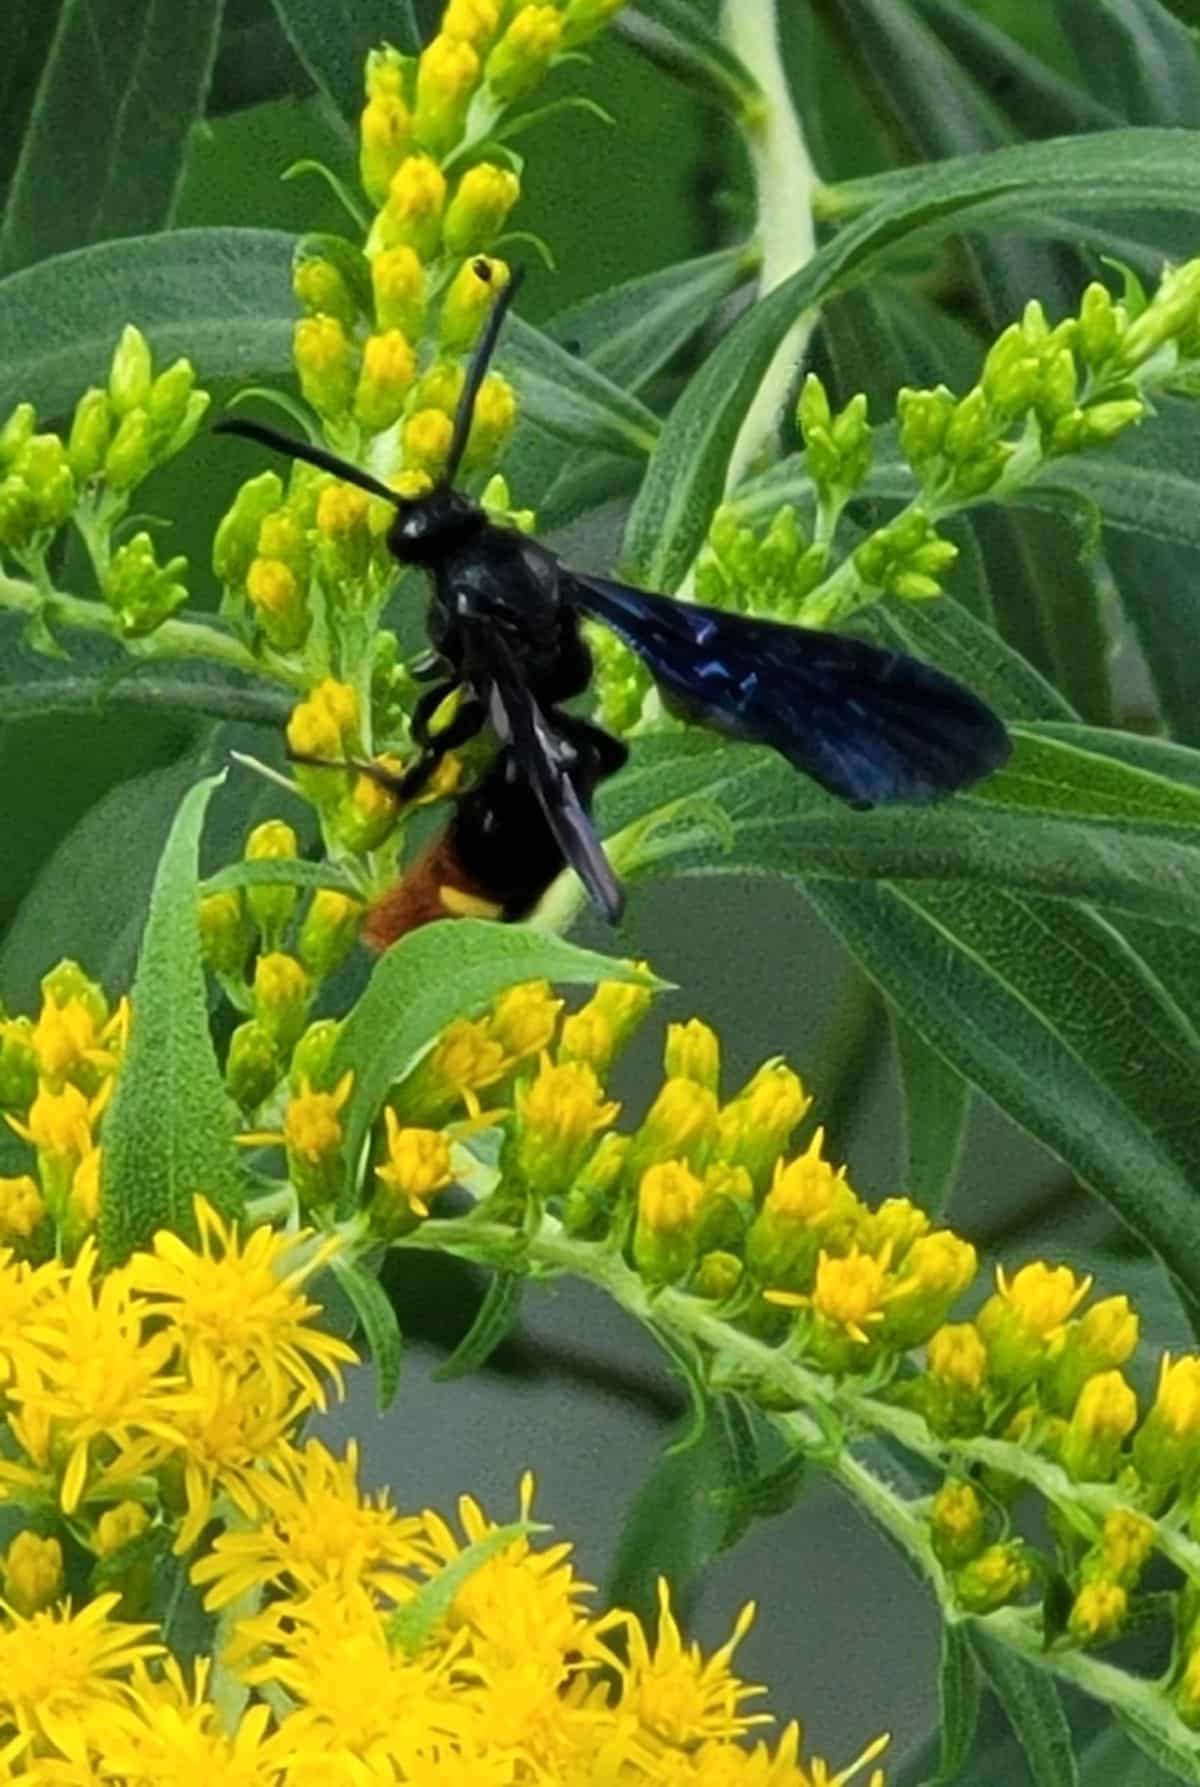 A mud dauber wasp feeding on nectar